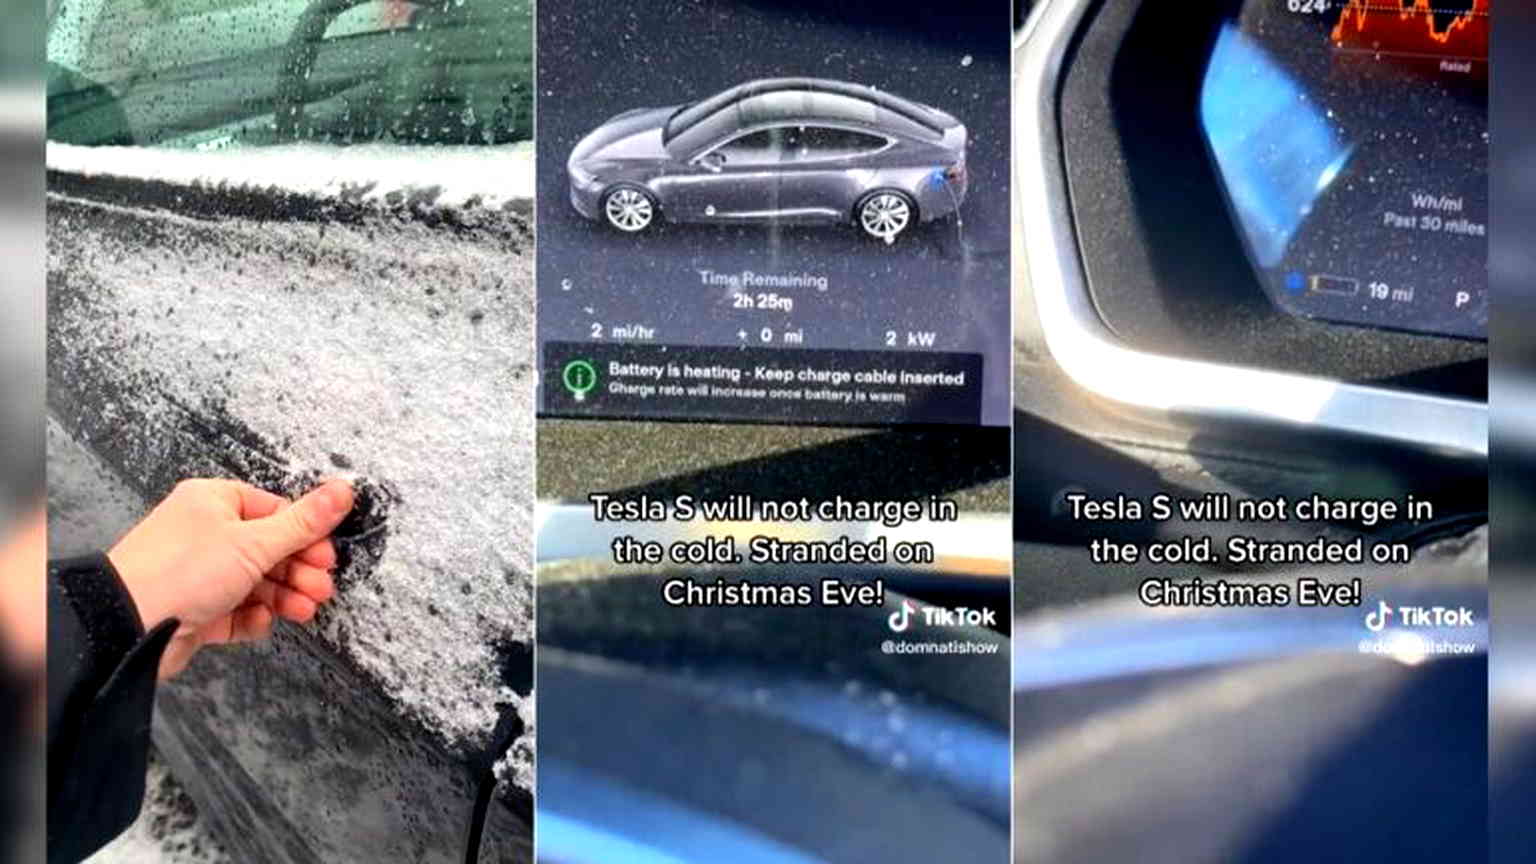 Videos of Teslas malfunctioning in below-freezing temperatures go viral